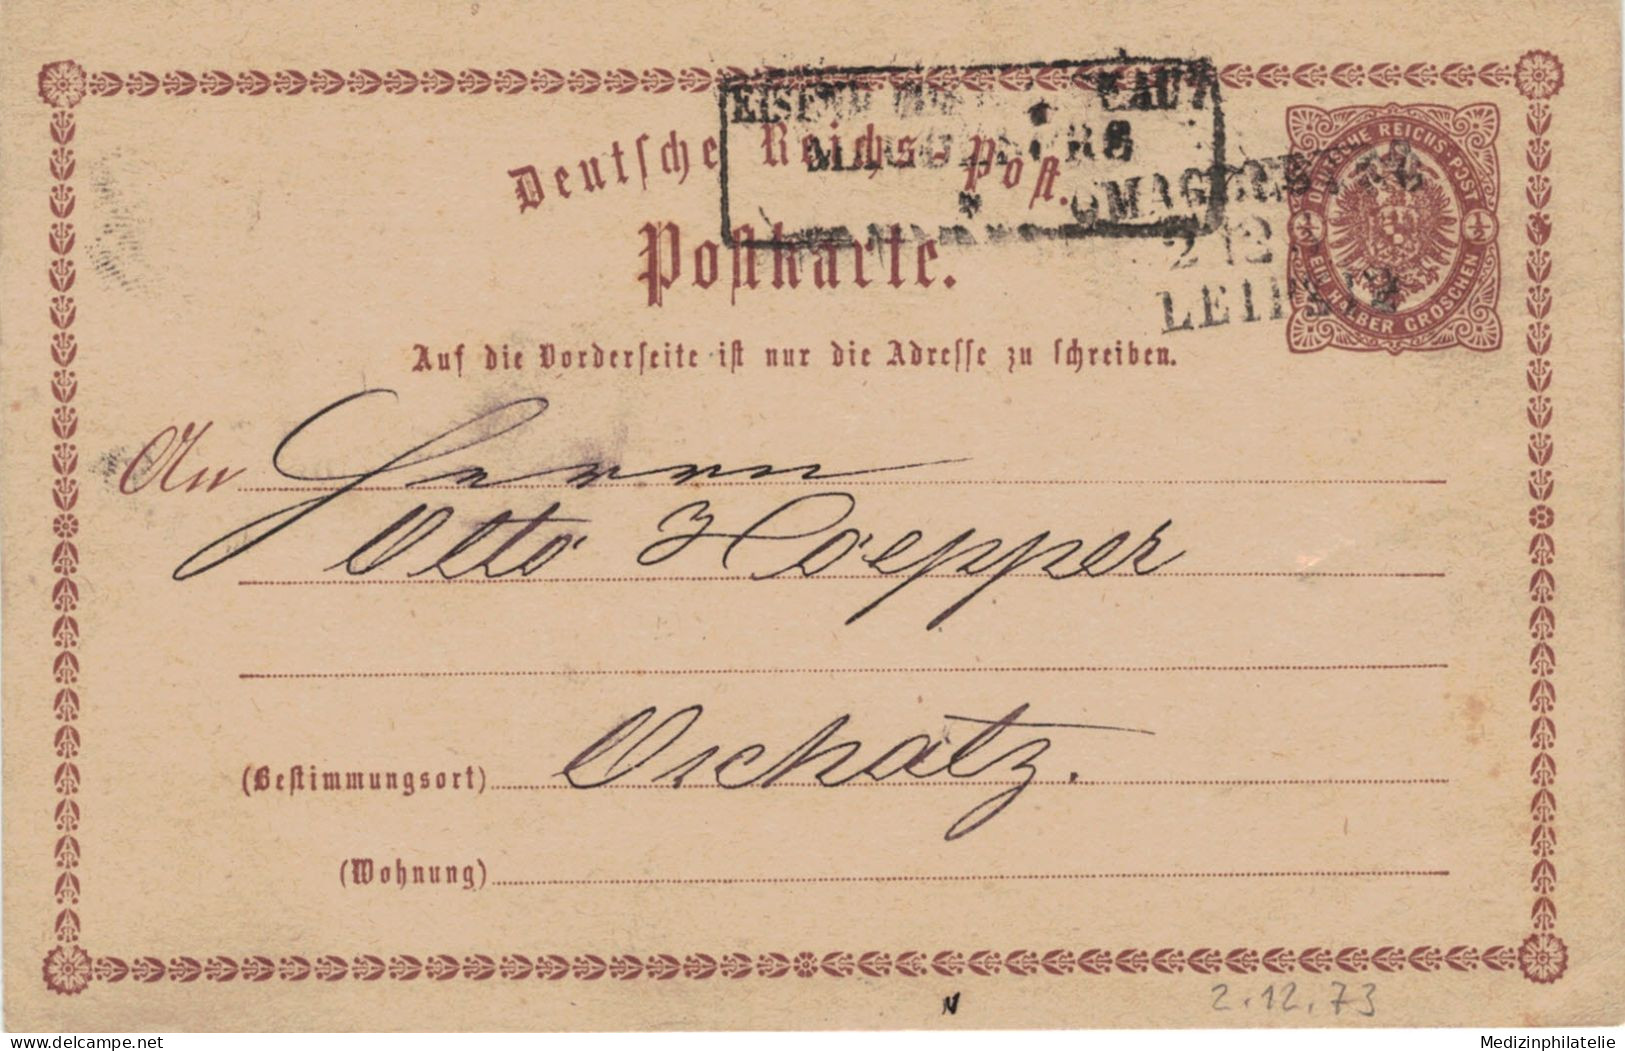 Ganzsache 1/2 Groschen - Zugstempel Magdeburg - Leipzig 1873 > Oschatz - Cartes Postales